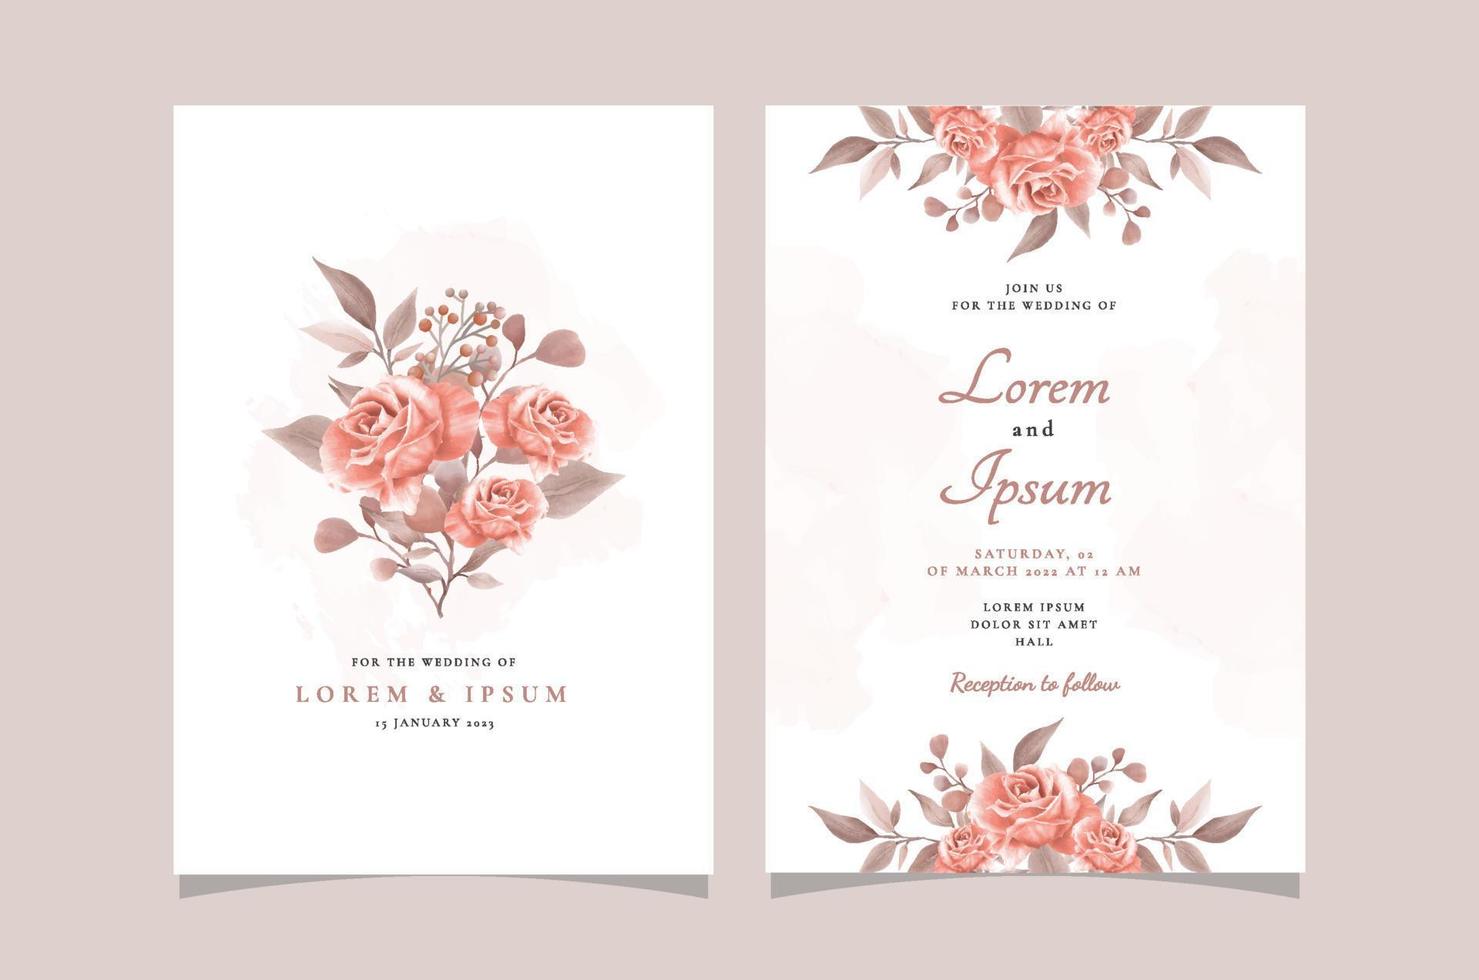 modèle de carte d'invitation de mariage floral élégant dessiné à la main vecteur